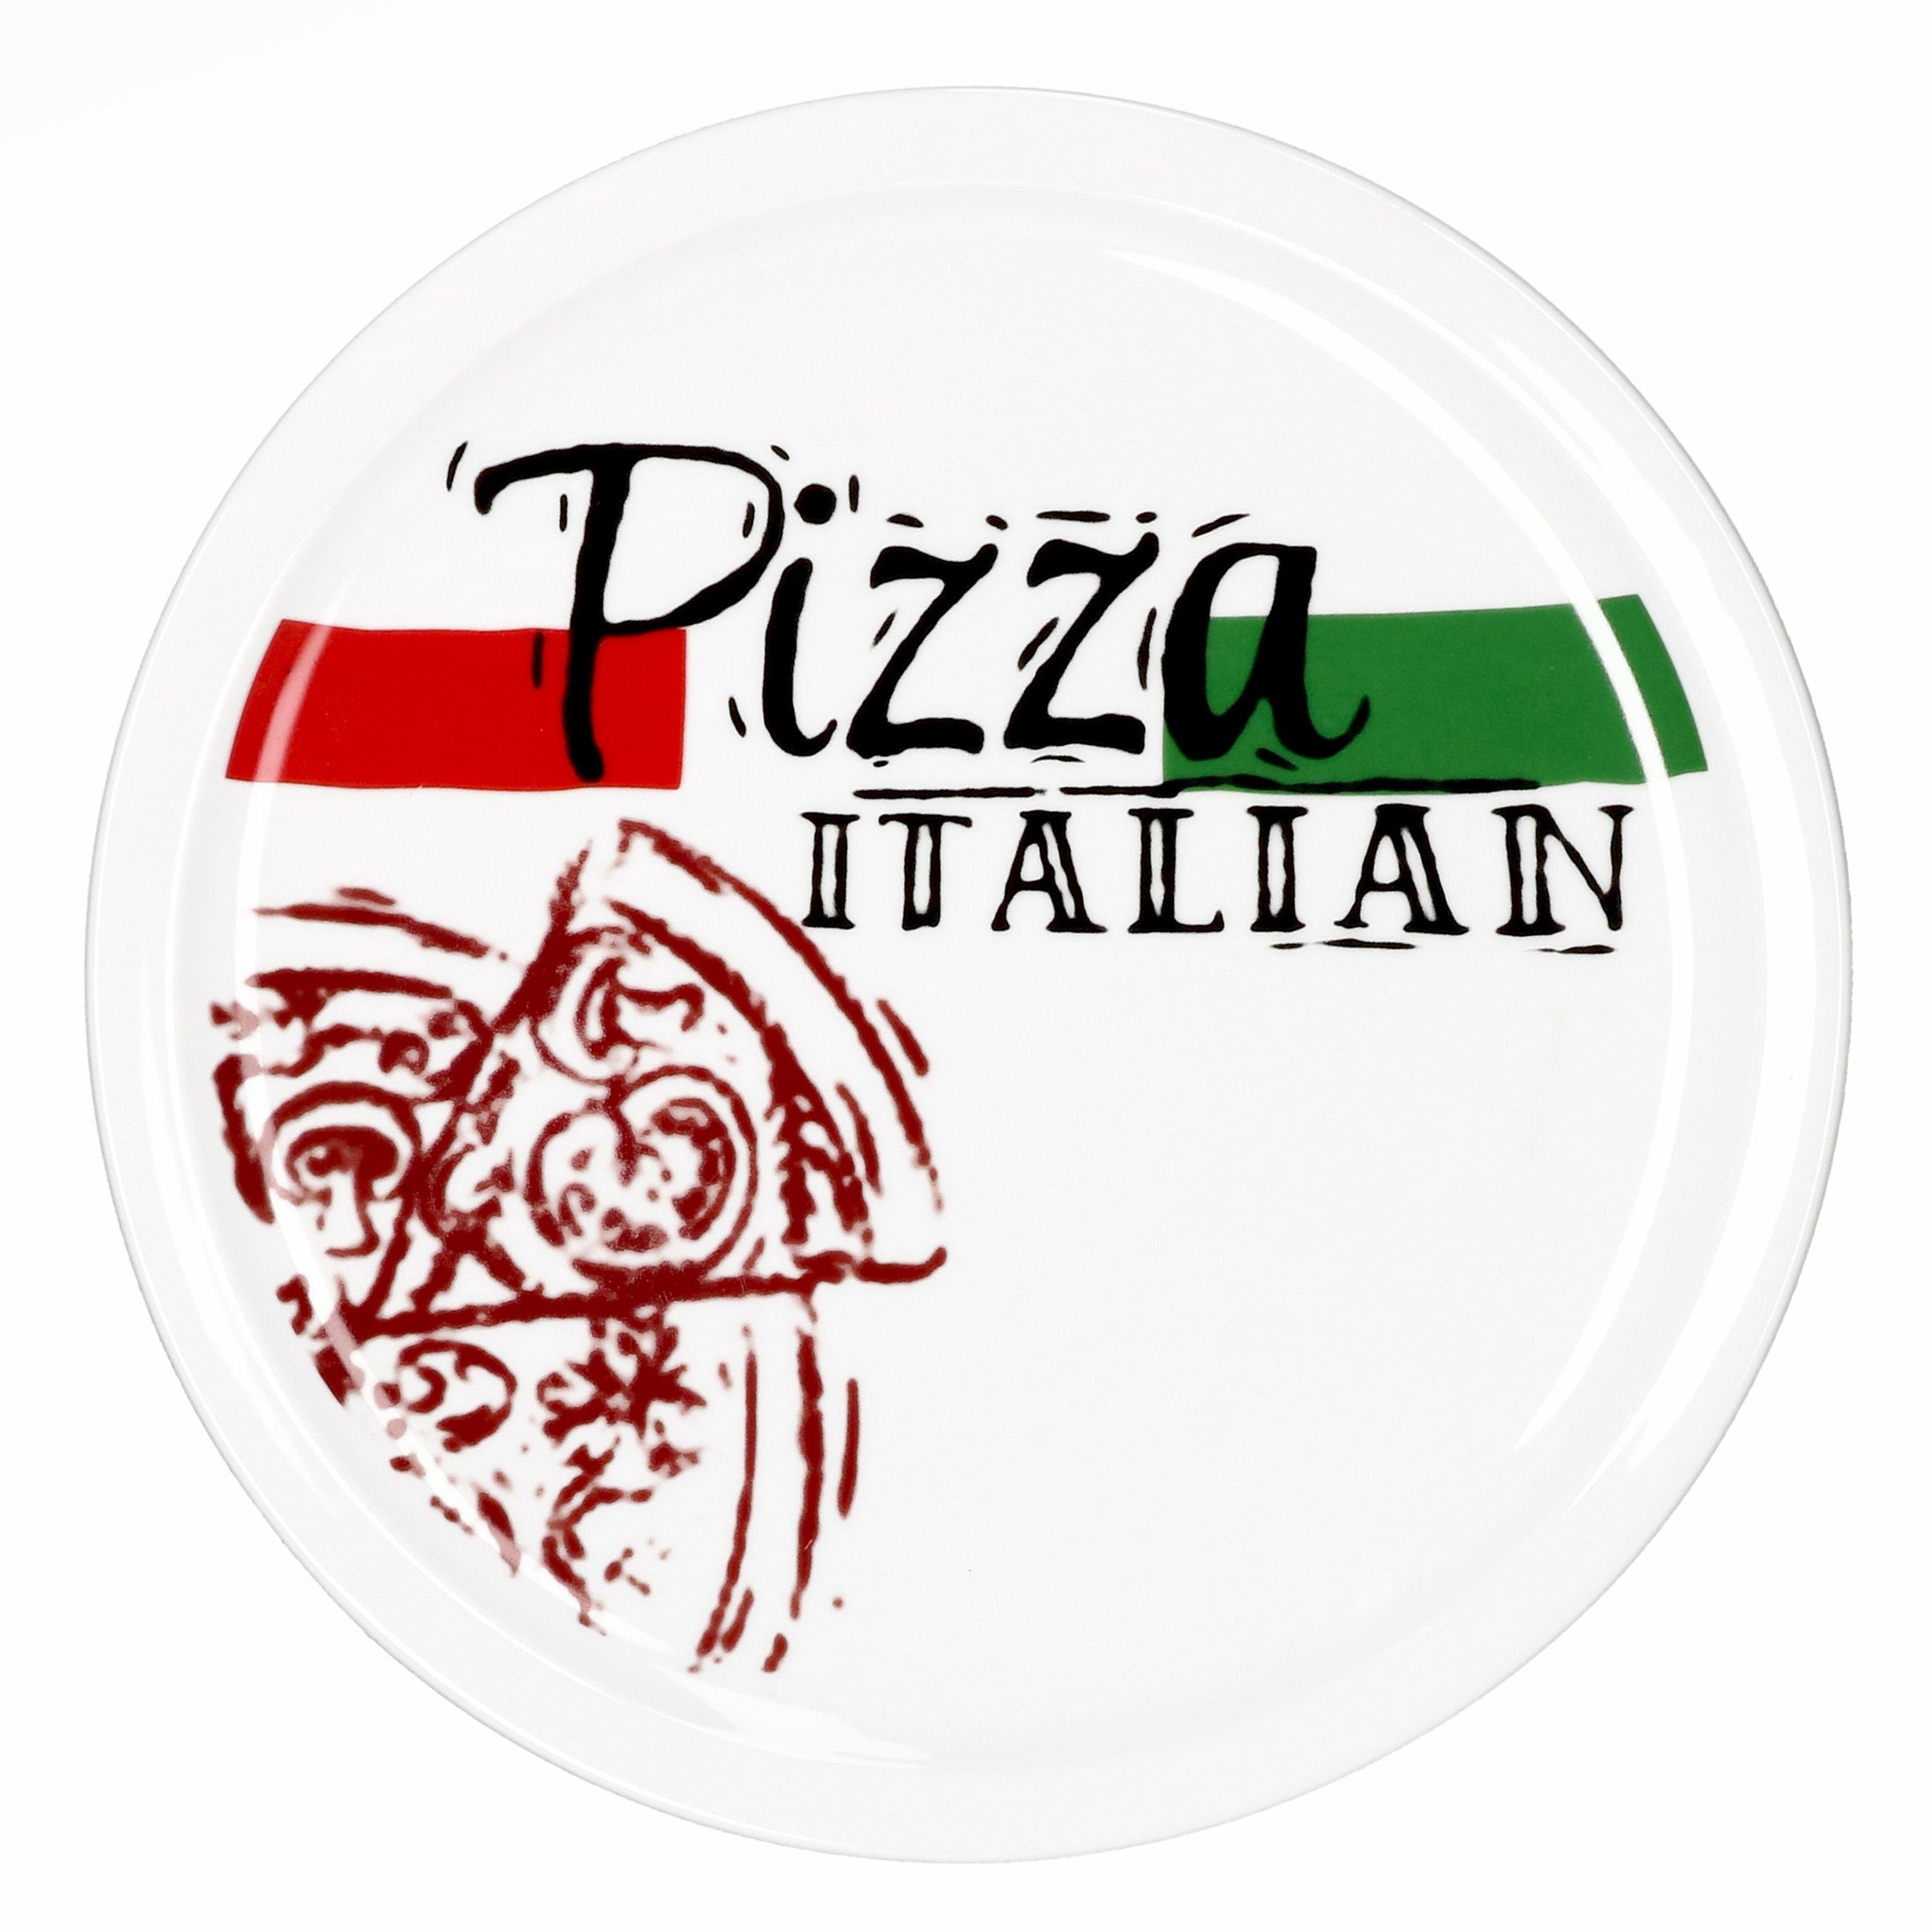 6er Pizzateller Pizzateller Pizza Set Italian 28cm MamboCat